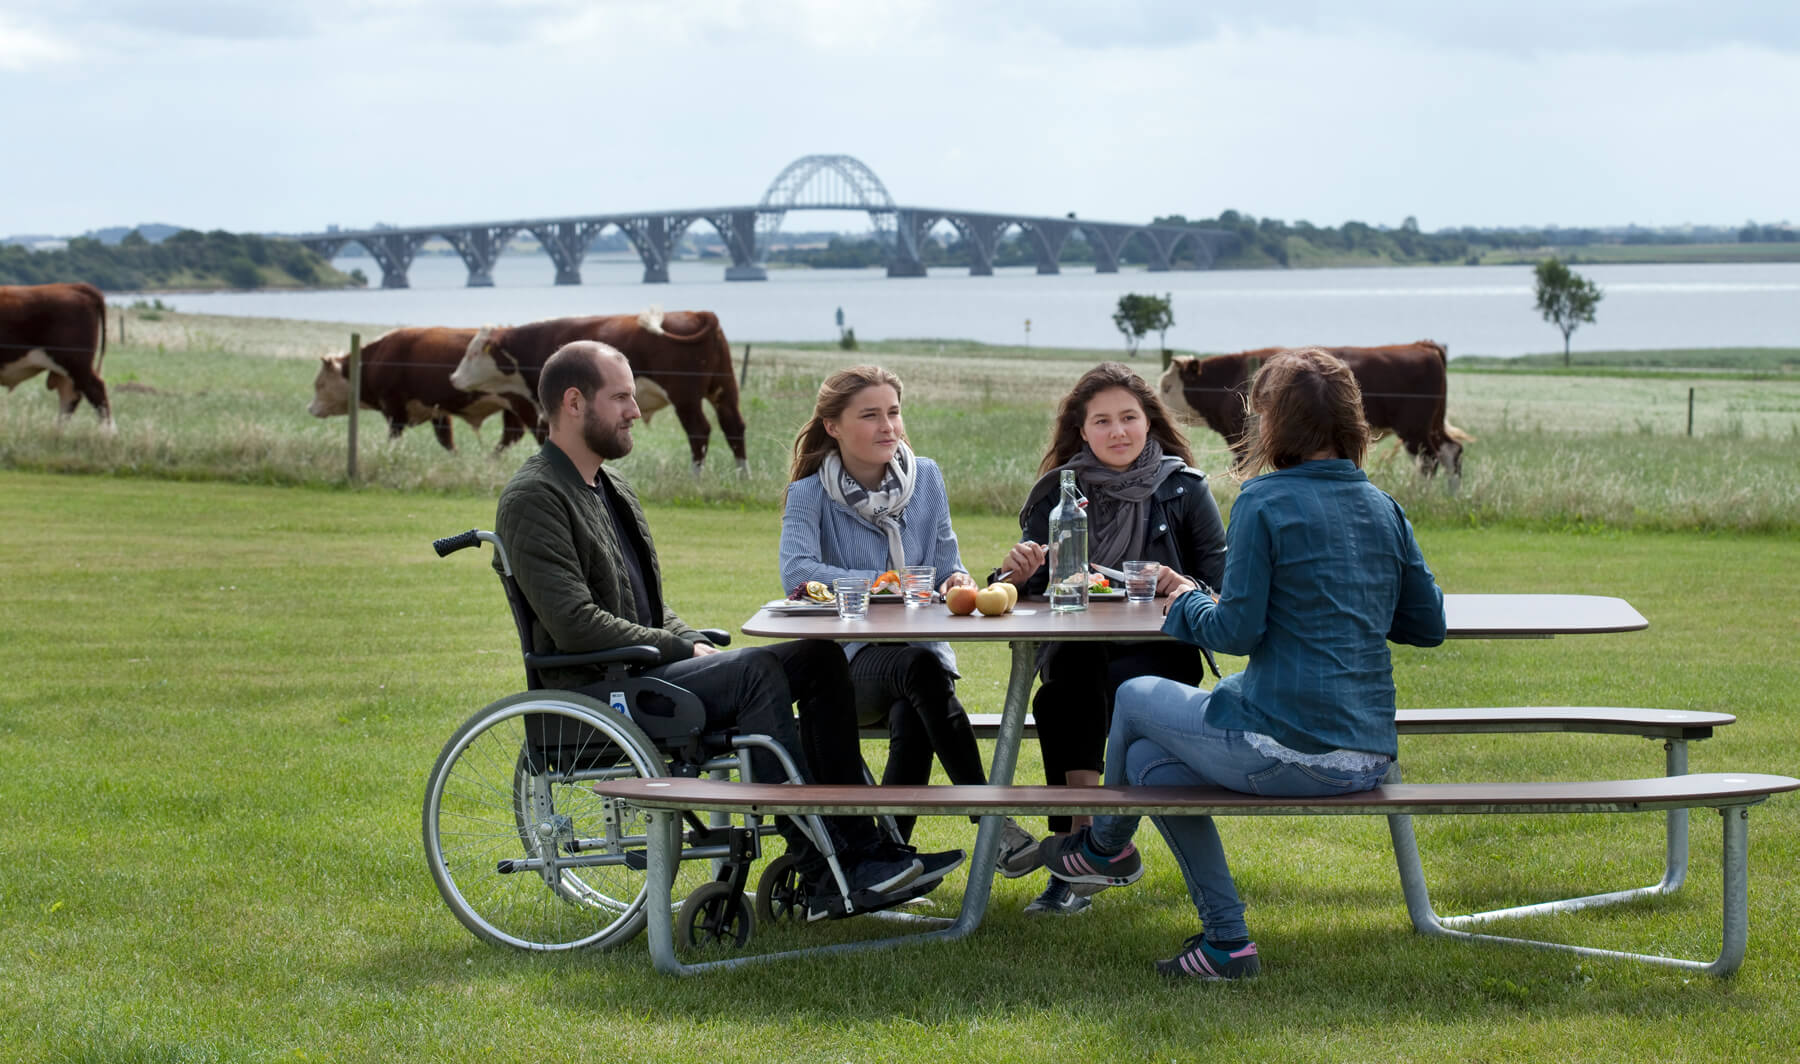 Et plateau picnic I bord i grønne omgivelser, hvor fire personer spiser frokost